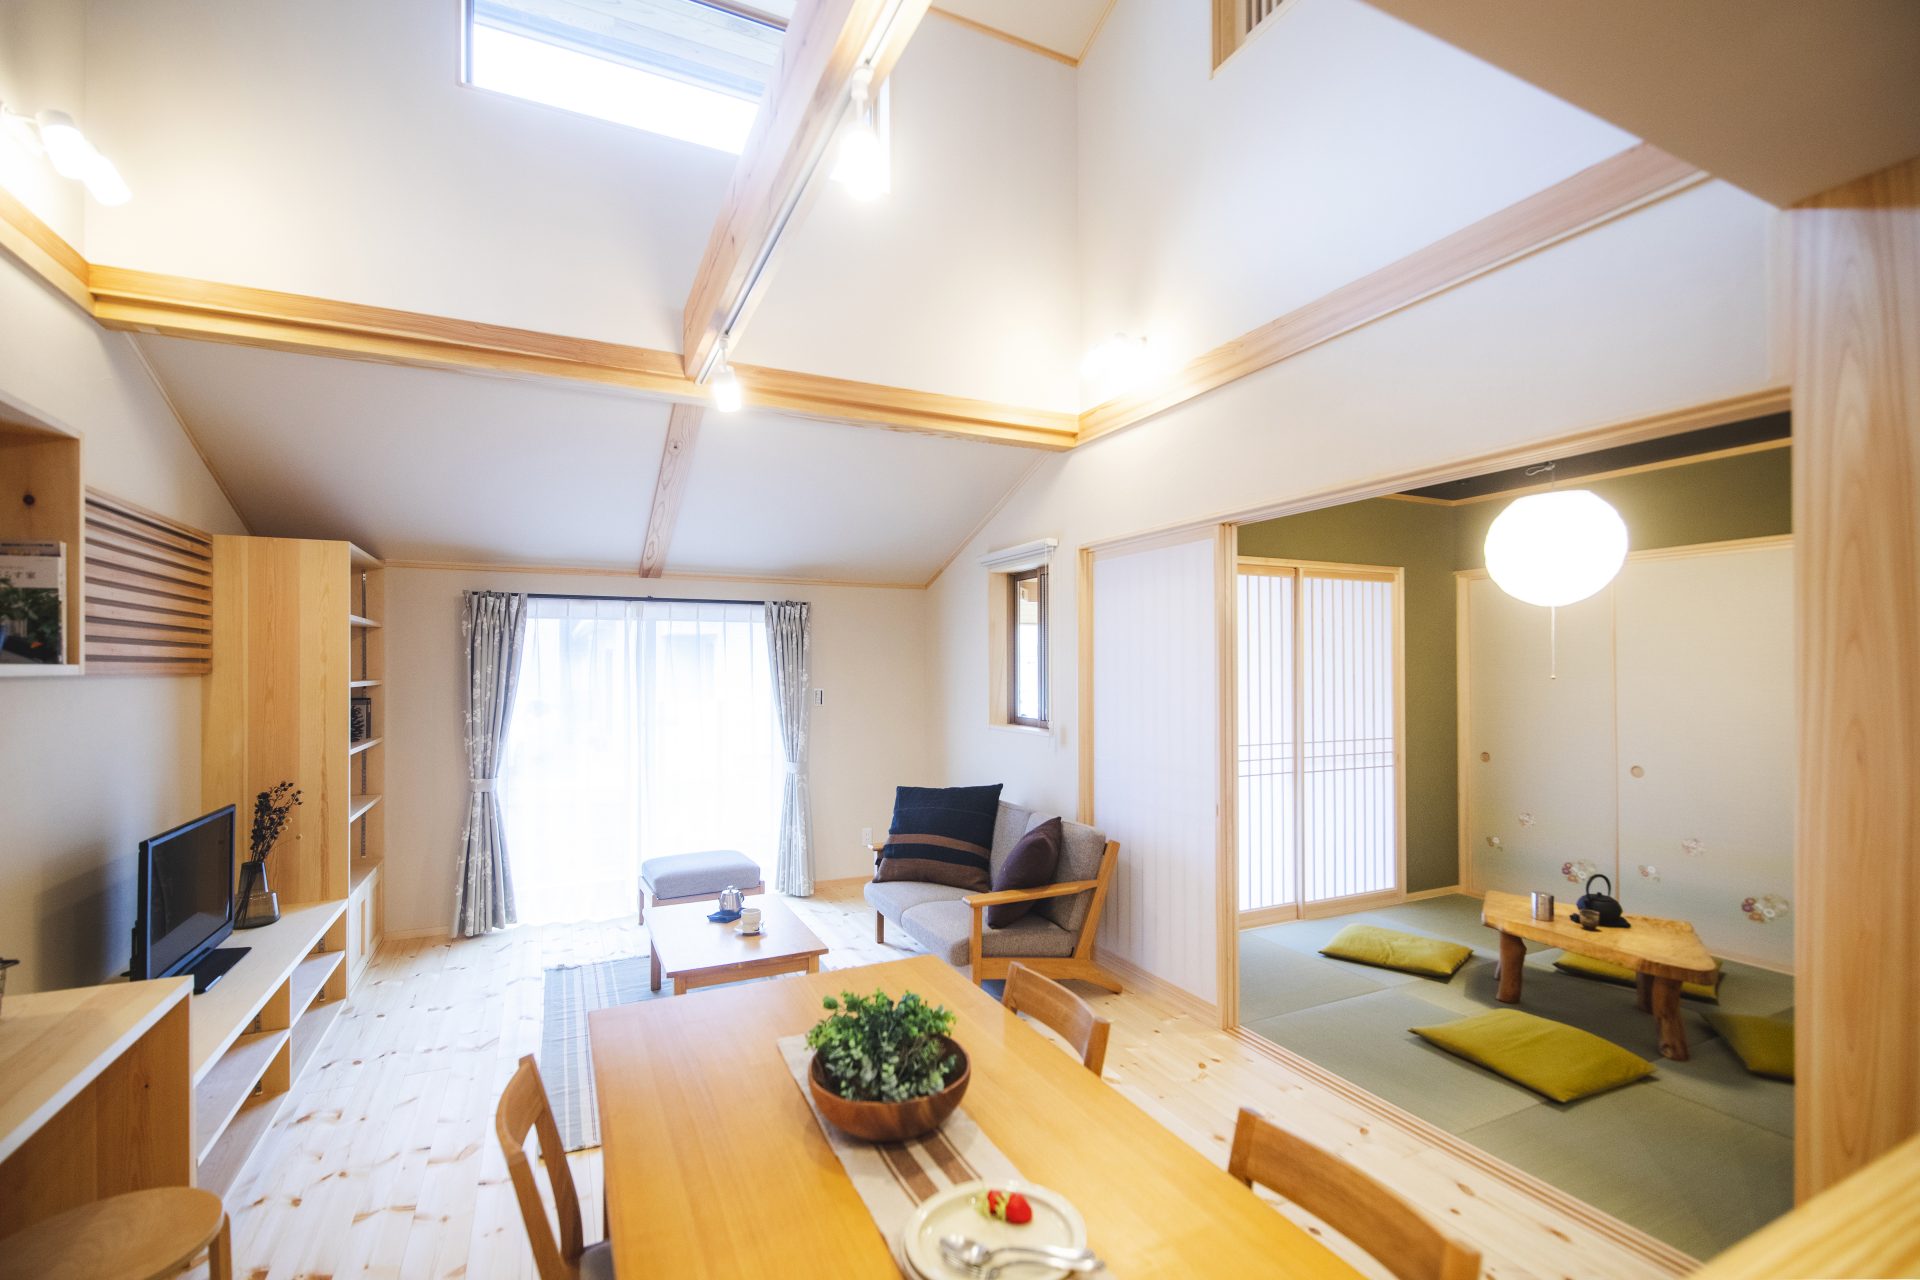 Căn nhà gỗ xây dựng theo lối kiến trúc Nhật Bản với 1 trệt 1 lửng đủ bình yên cho gia đình trẻ - Ảnh 6.